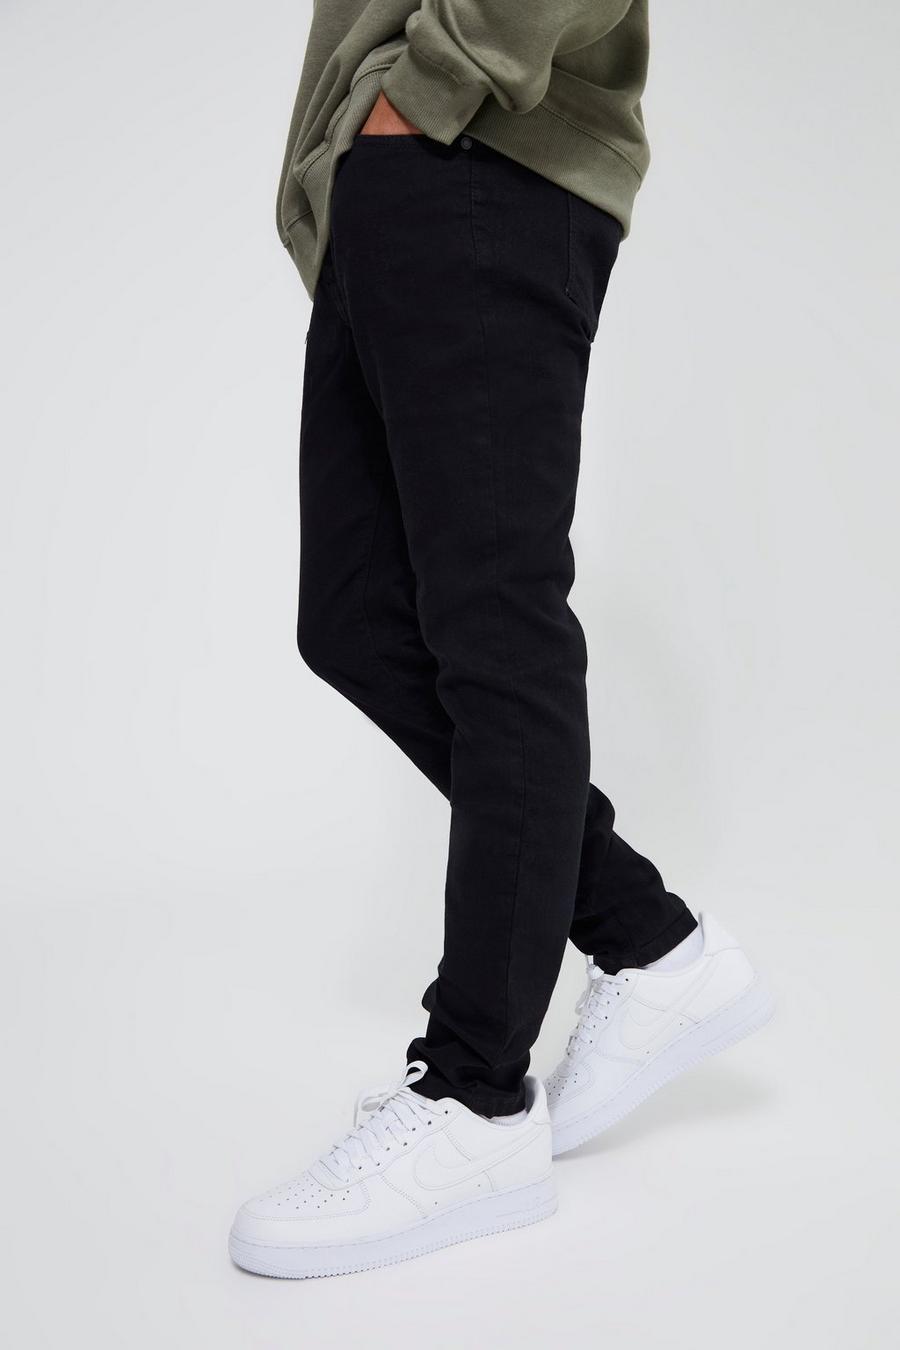 שחור אמיתי מכנסי ג'ינס סקיני נמתחים